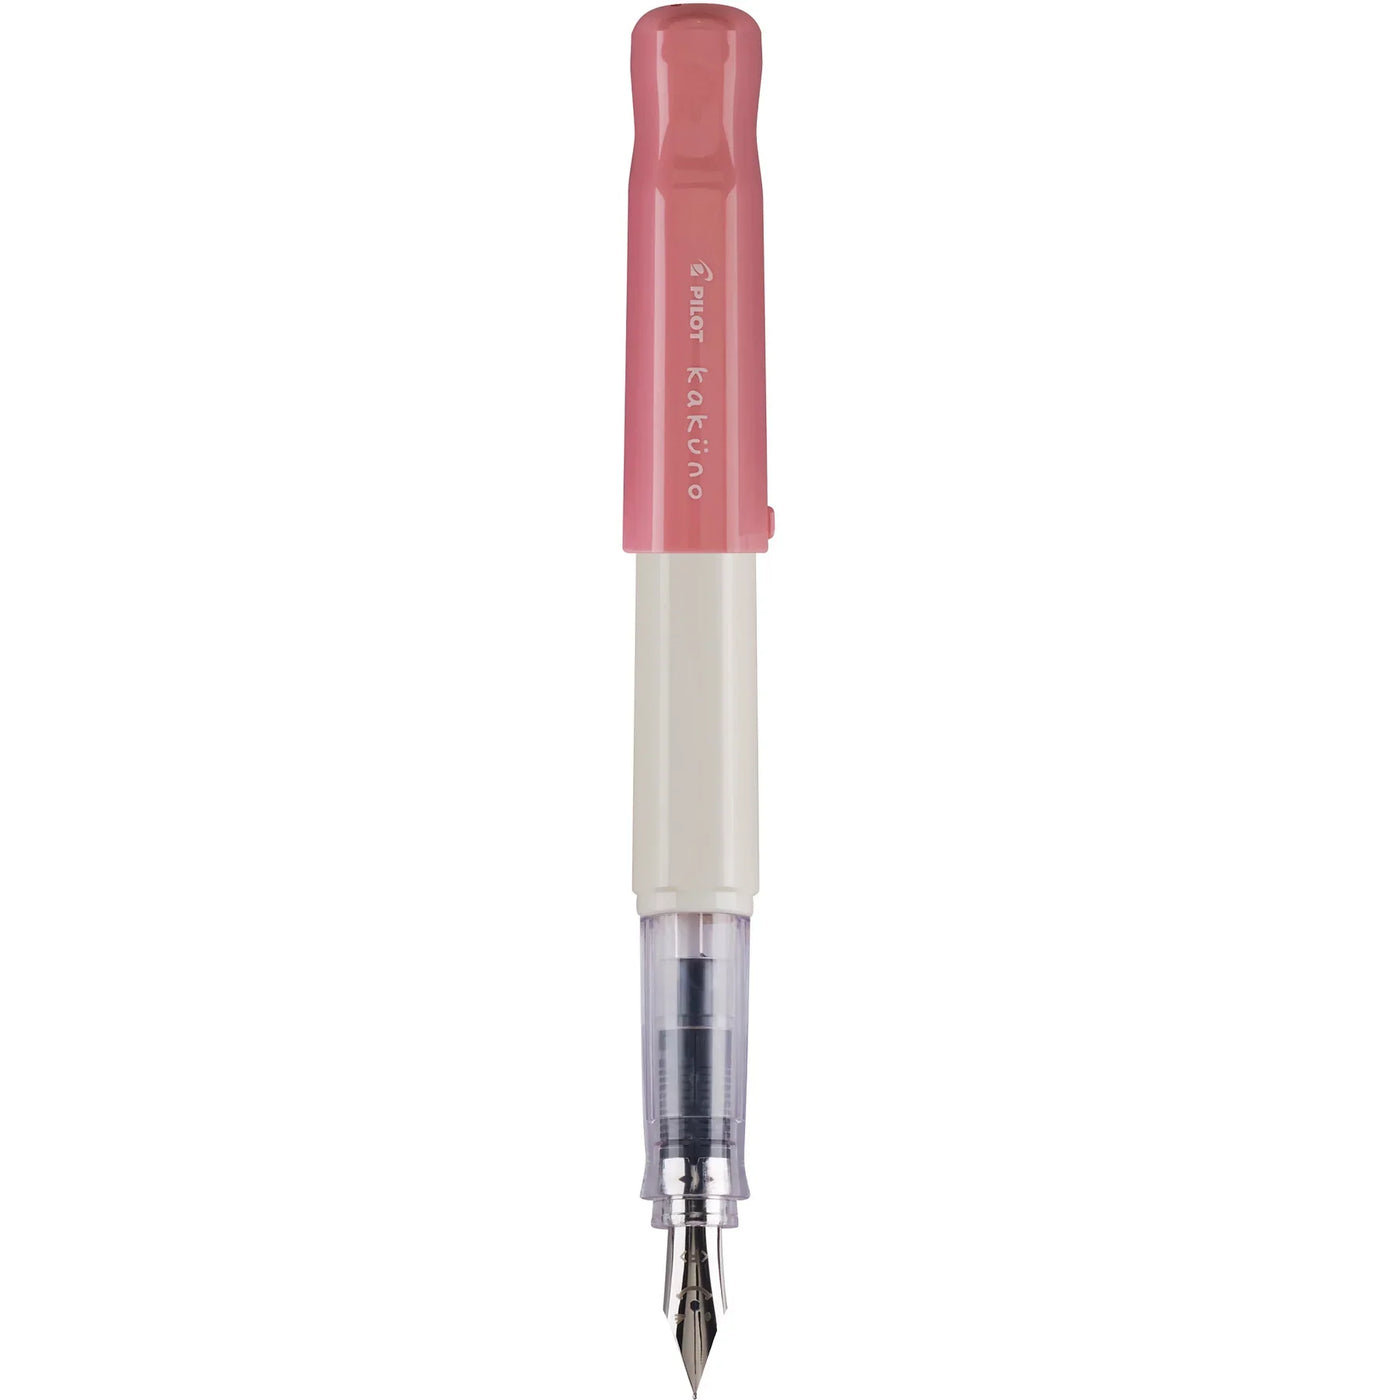 Pilot Kakuno Fountain Pen - White & Pink